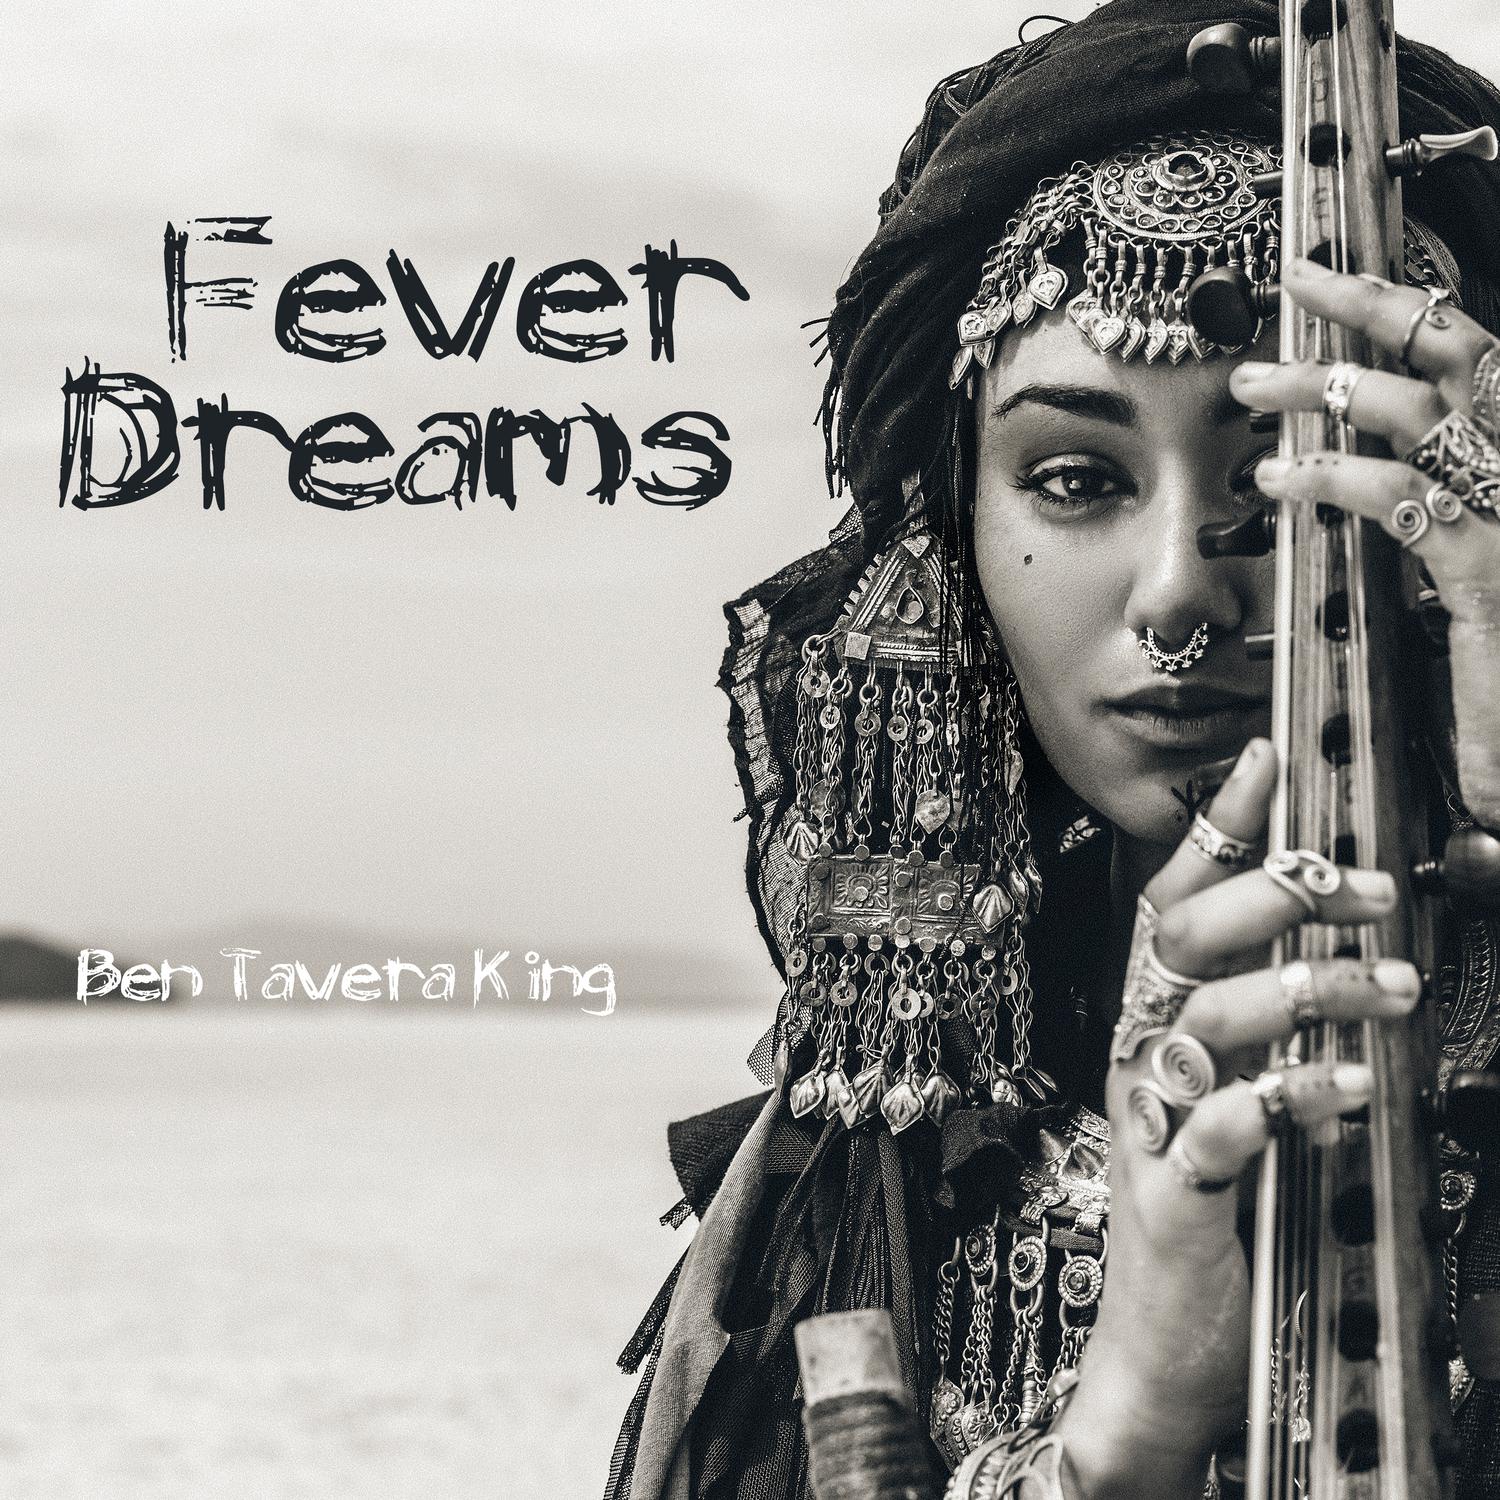 Ben Tavera King - Corner of Never & Forever